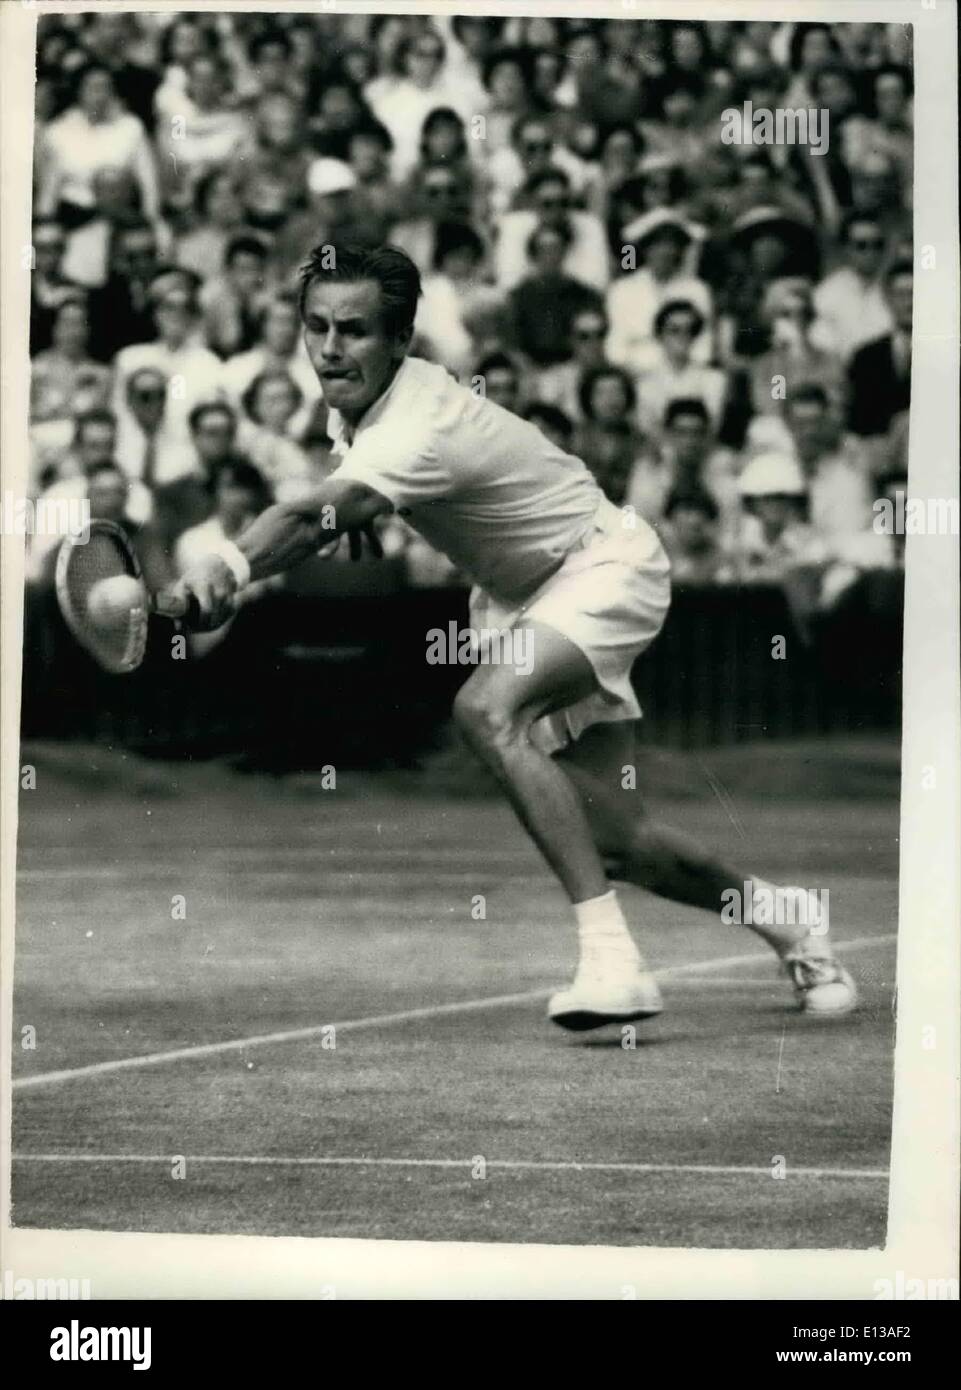 29. Februar 2012 - Tennis in Wimbledon - sechsten Tag Larsen V. Hoad: Foto zeigt Kunst Larsen (U.S.A), im Spiel während seines Spiels mit L.A. Hoad (Australien) in Wimbledon heute. Stockfoto